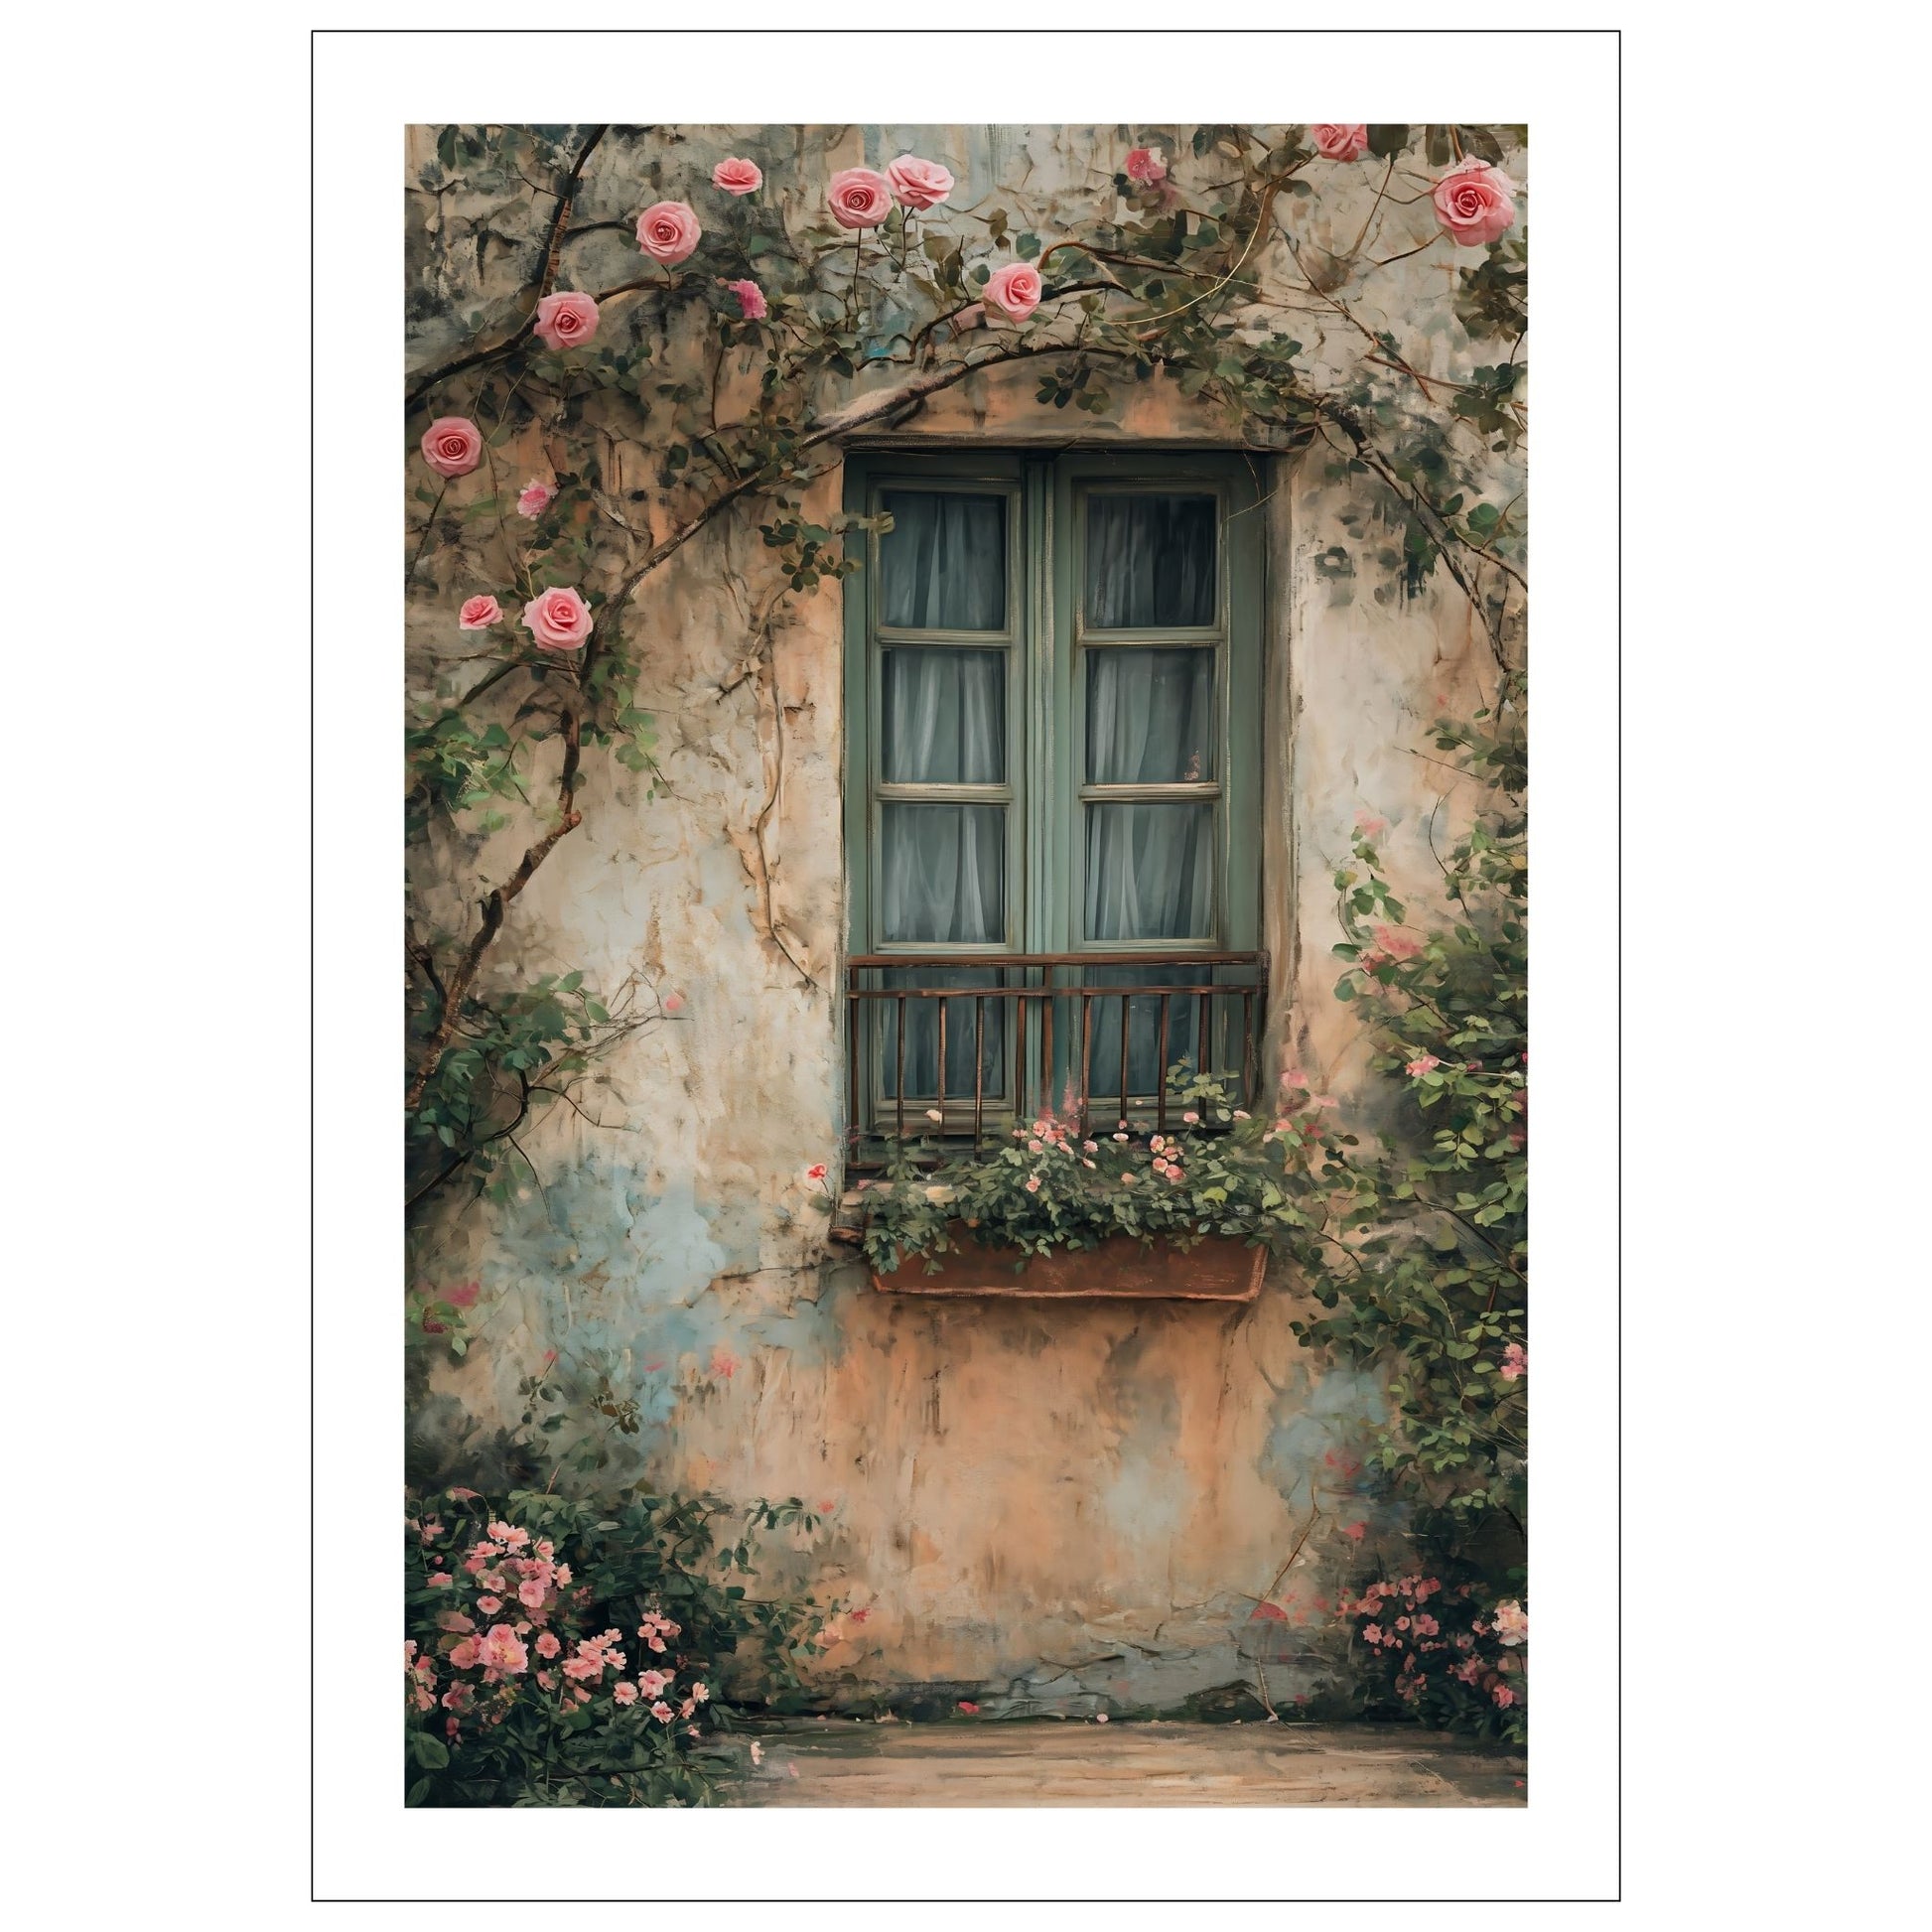 Fotografi av et vindu med grønne karmer på et gammelt hus. Foran vinduet henger en blomsterkasse og rundt vinduet vokser et rosetre med rosa blomster.